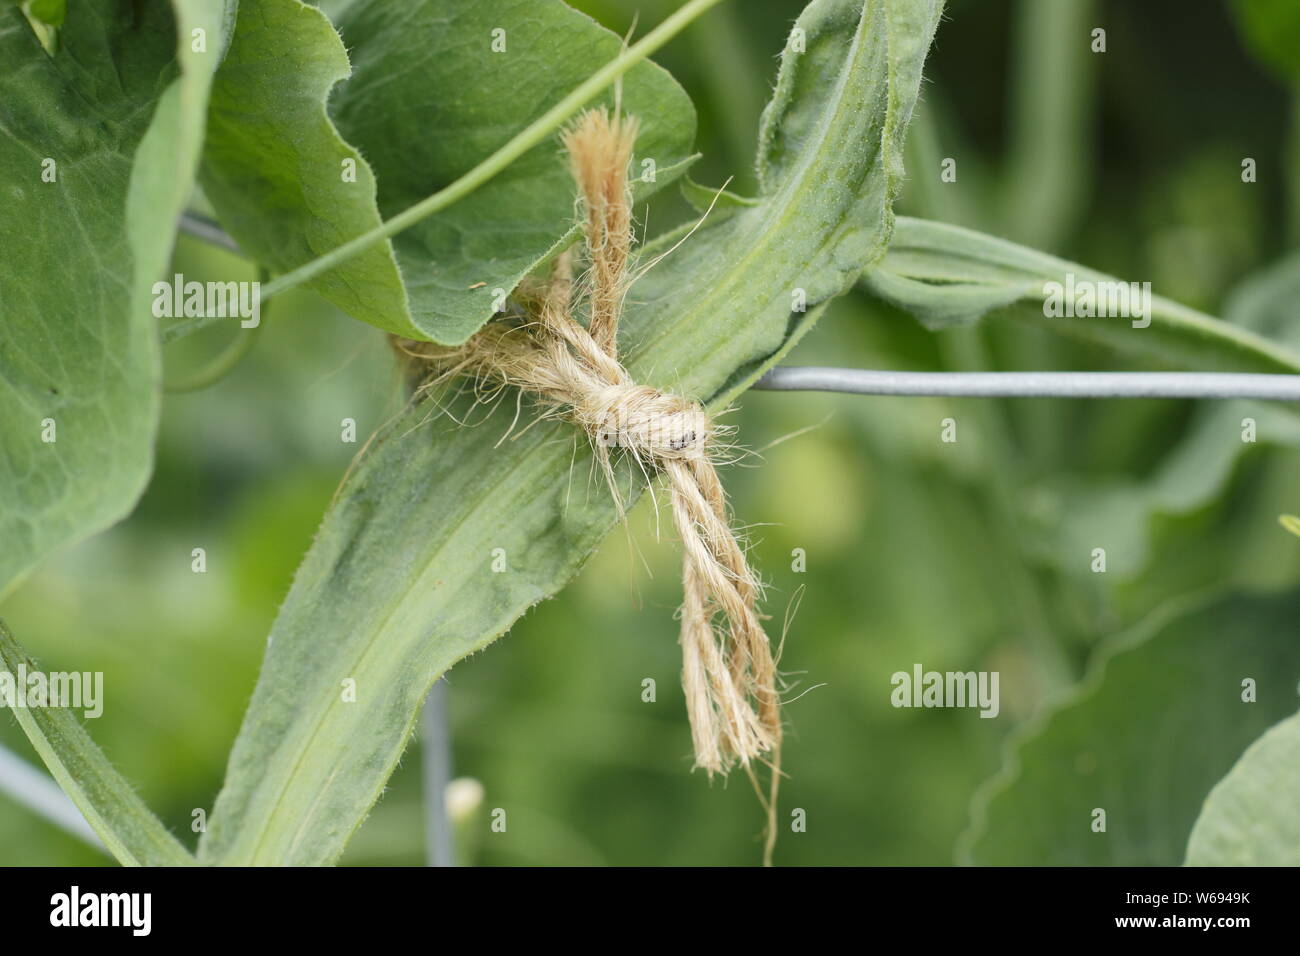 Lathyrus Odoratus. Binden im Sweet pea plant Starke, gerade das Wachstum zu fördern und zu unterstützen. Stockfoto